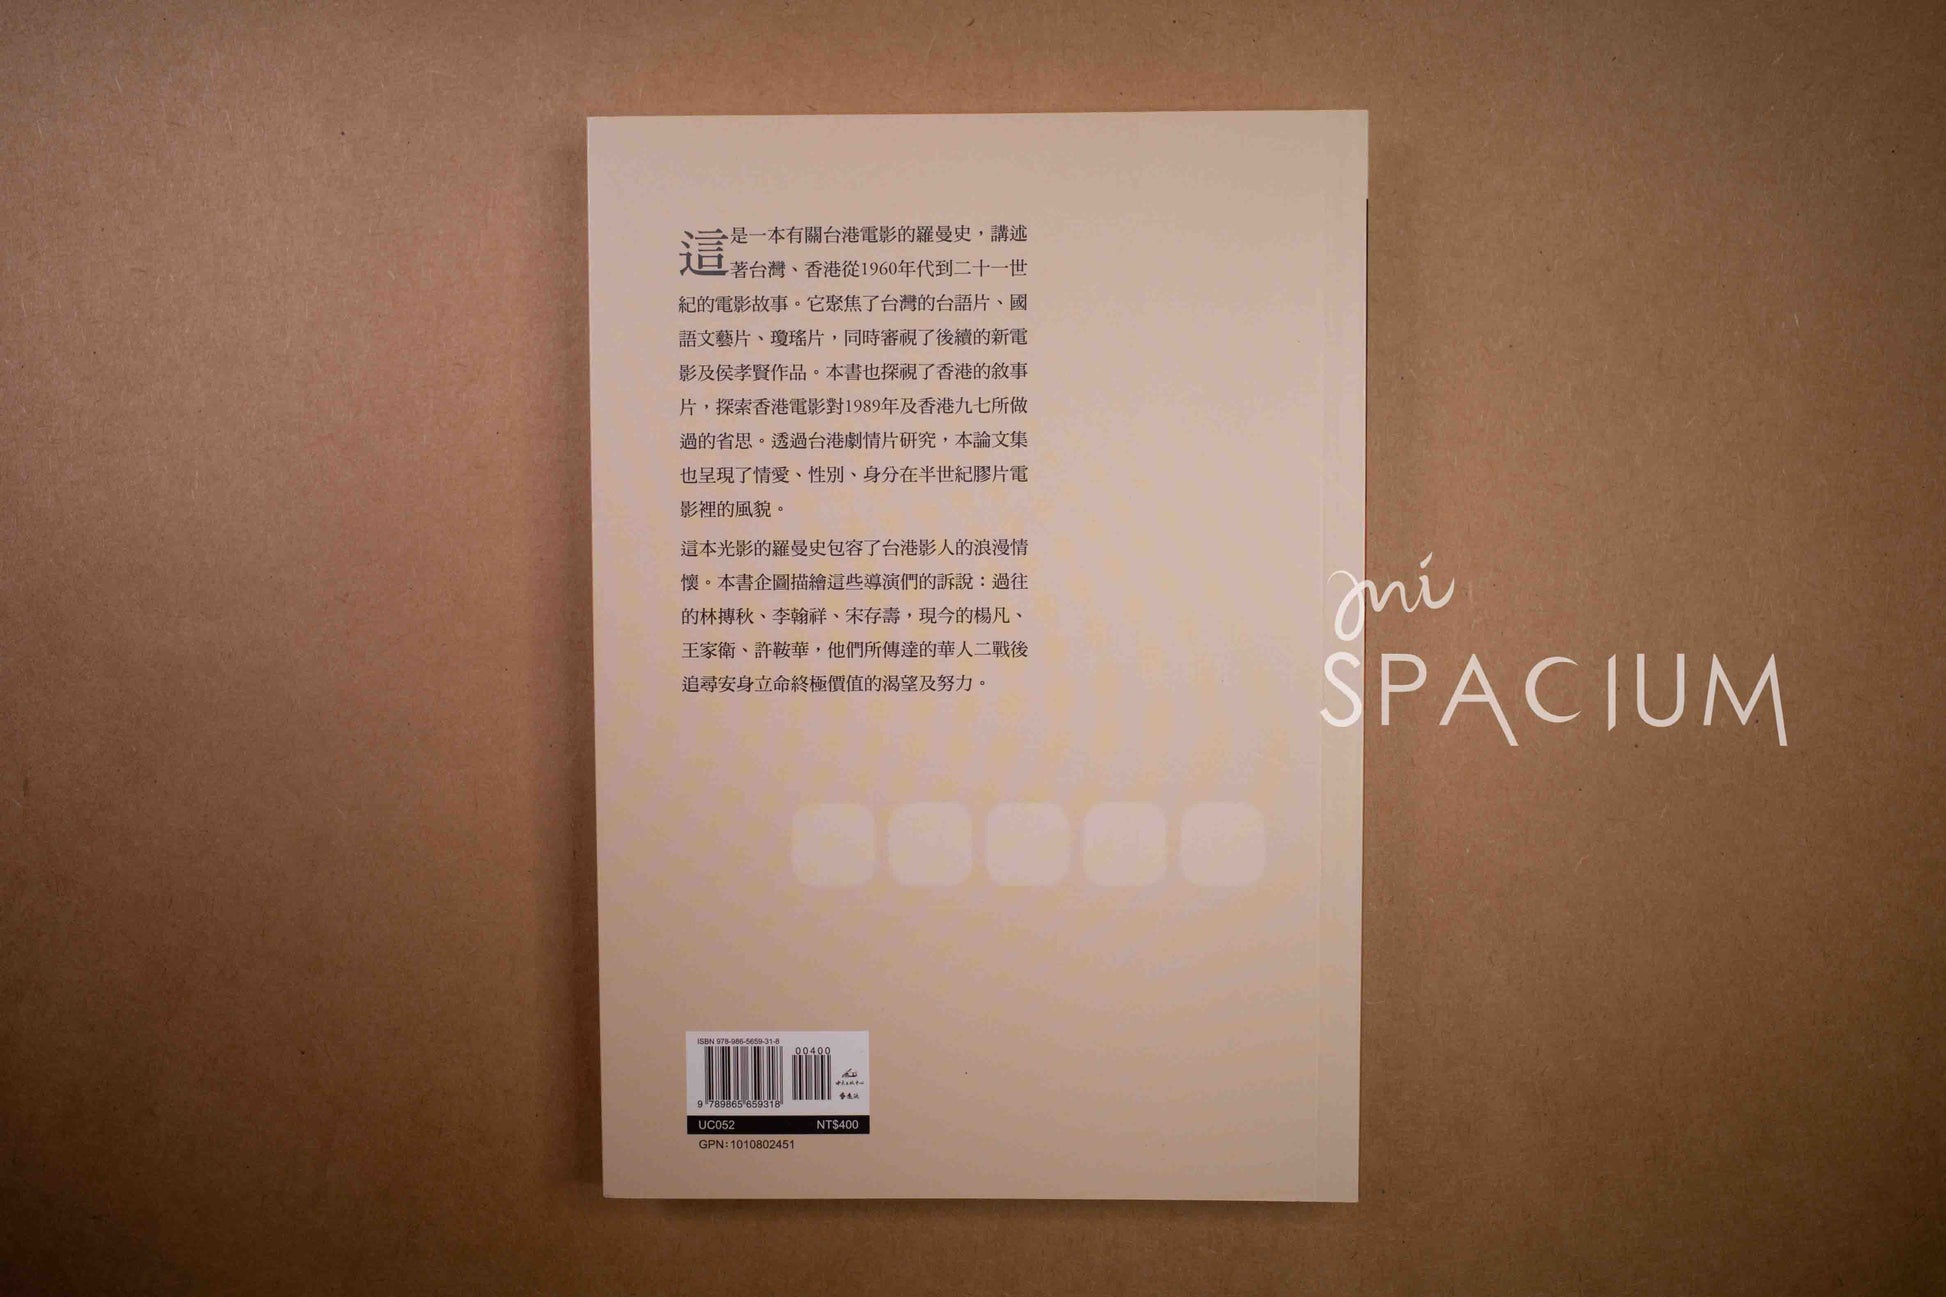 【新書】光影羅曼史 - Mi Spacium Design Studio - 文化研究 Cultural Studies